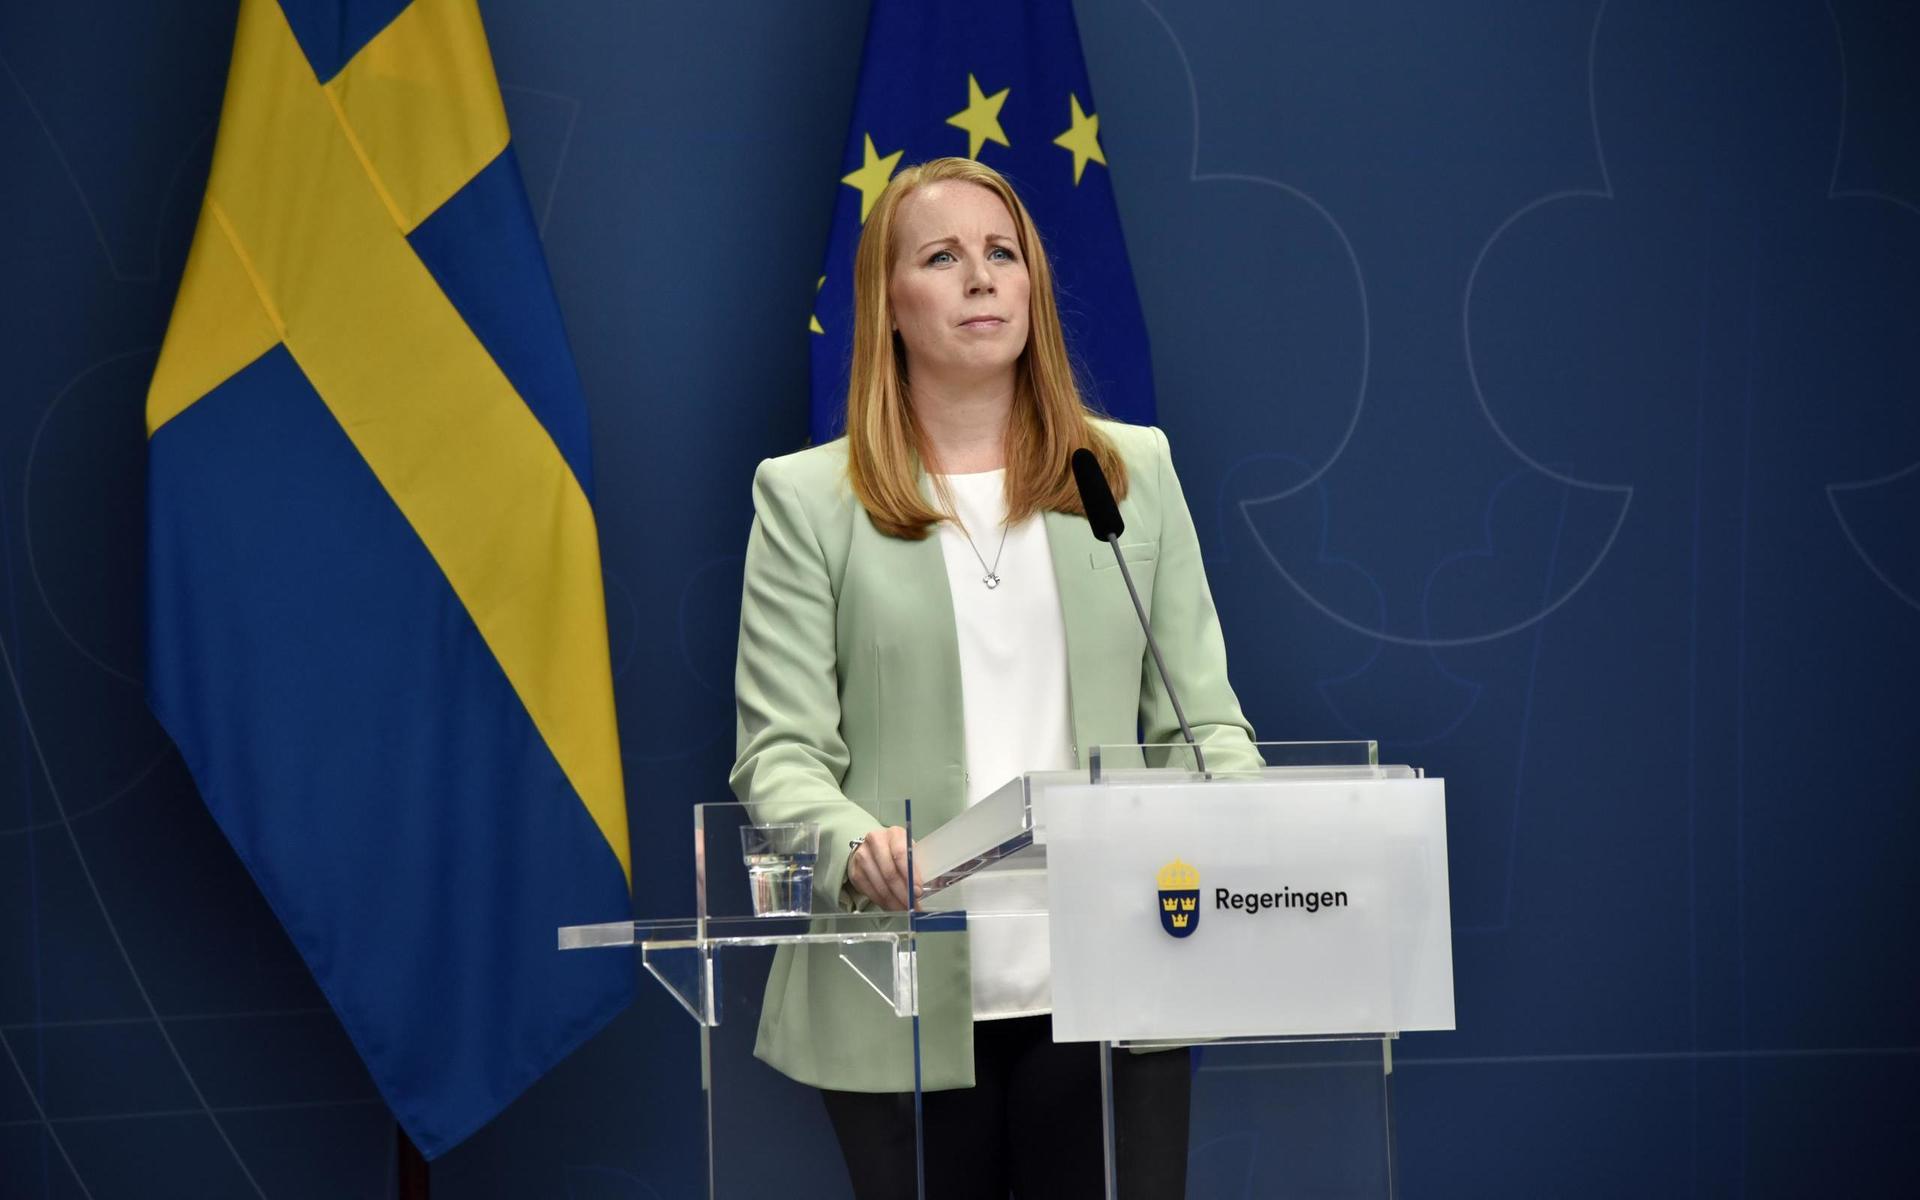 Annie Lööf och Centerpartiet har fått inviter från både vänster och höger.